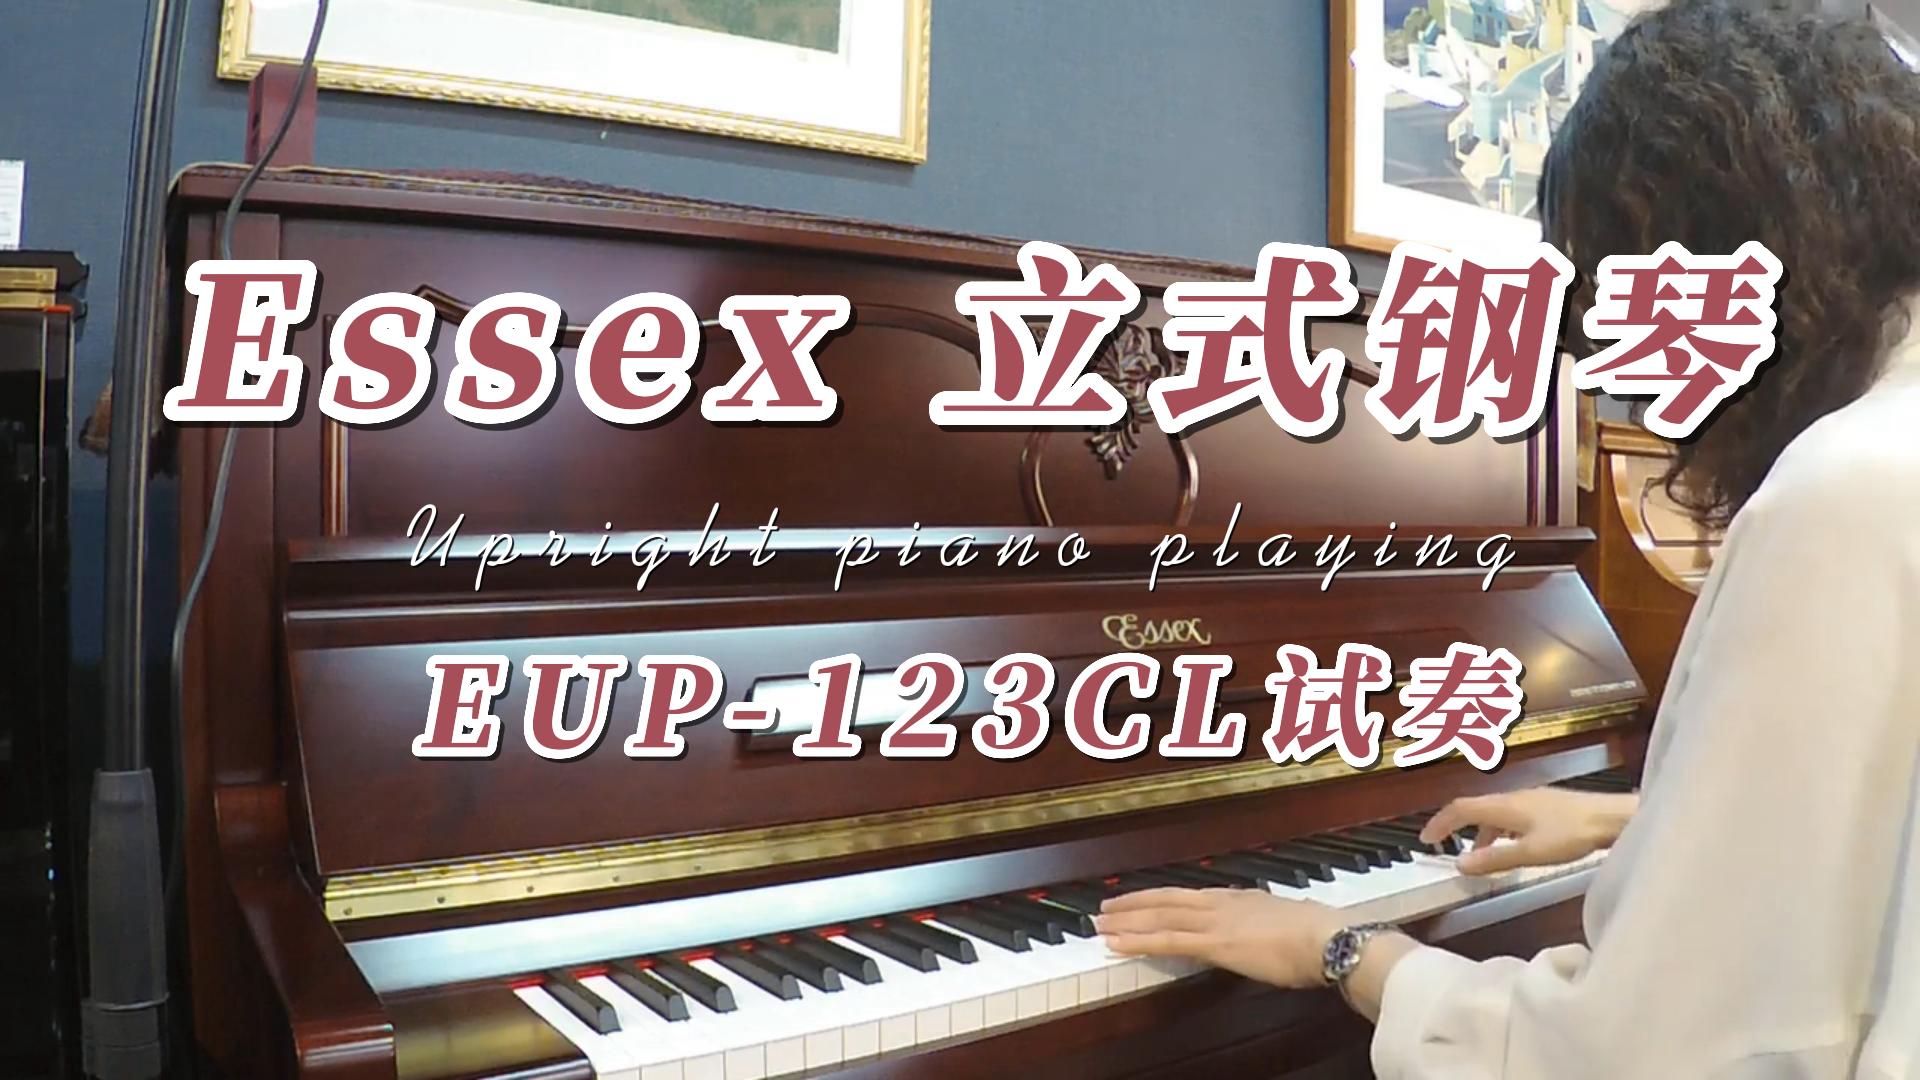 Essex 立式钢琴EUP-123CL试奏-柏通琴行整理